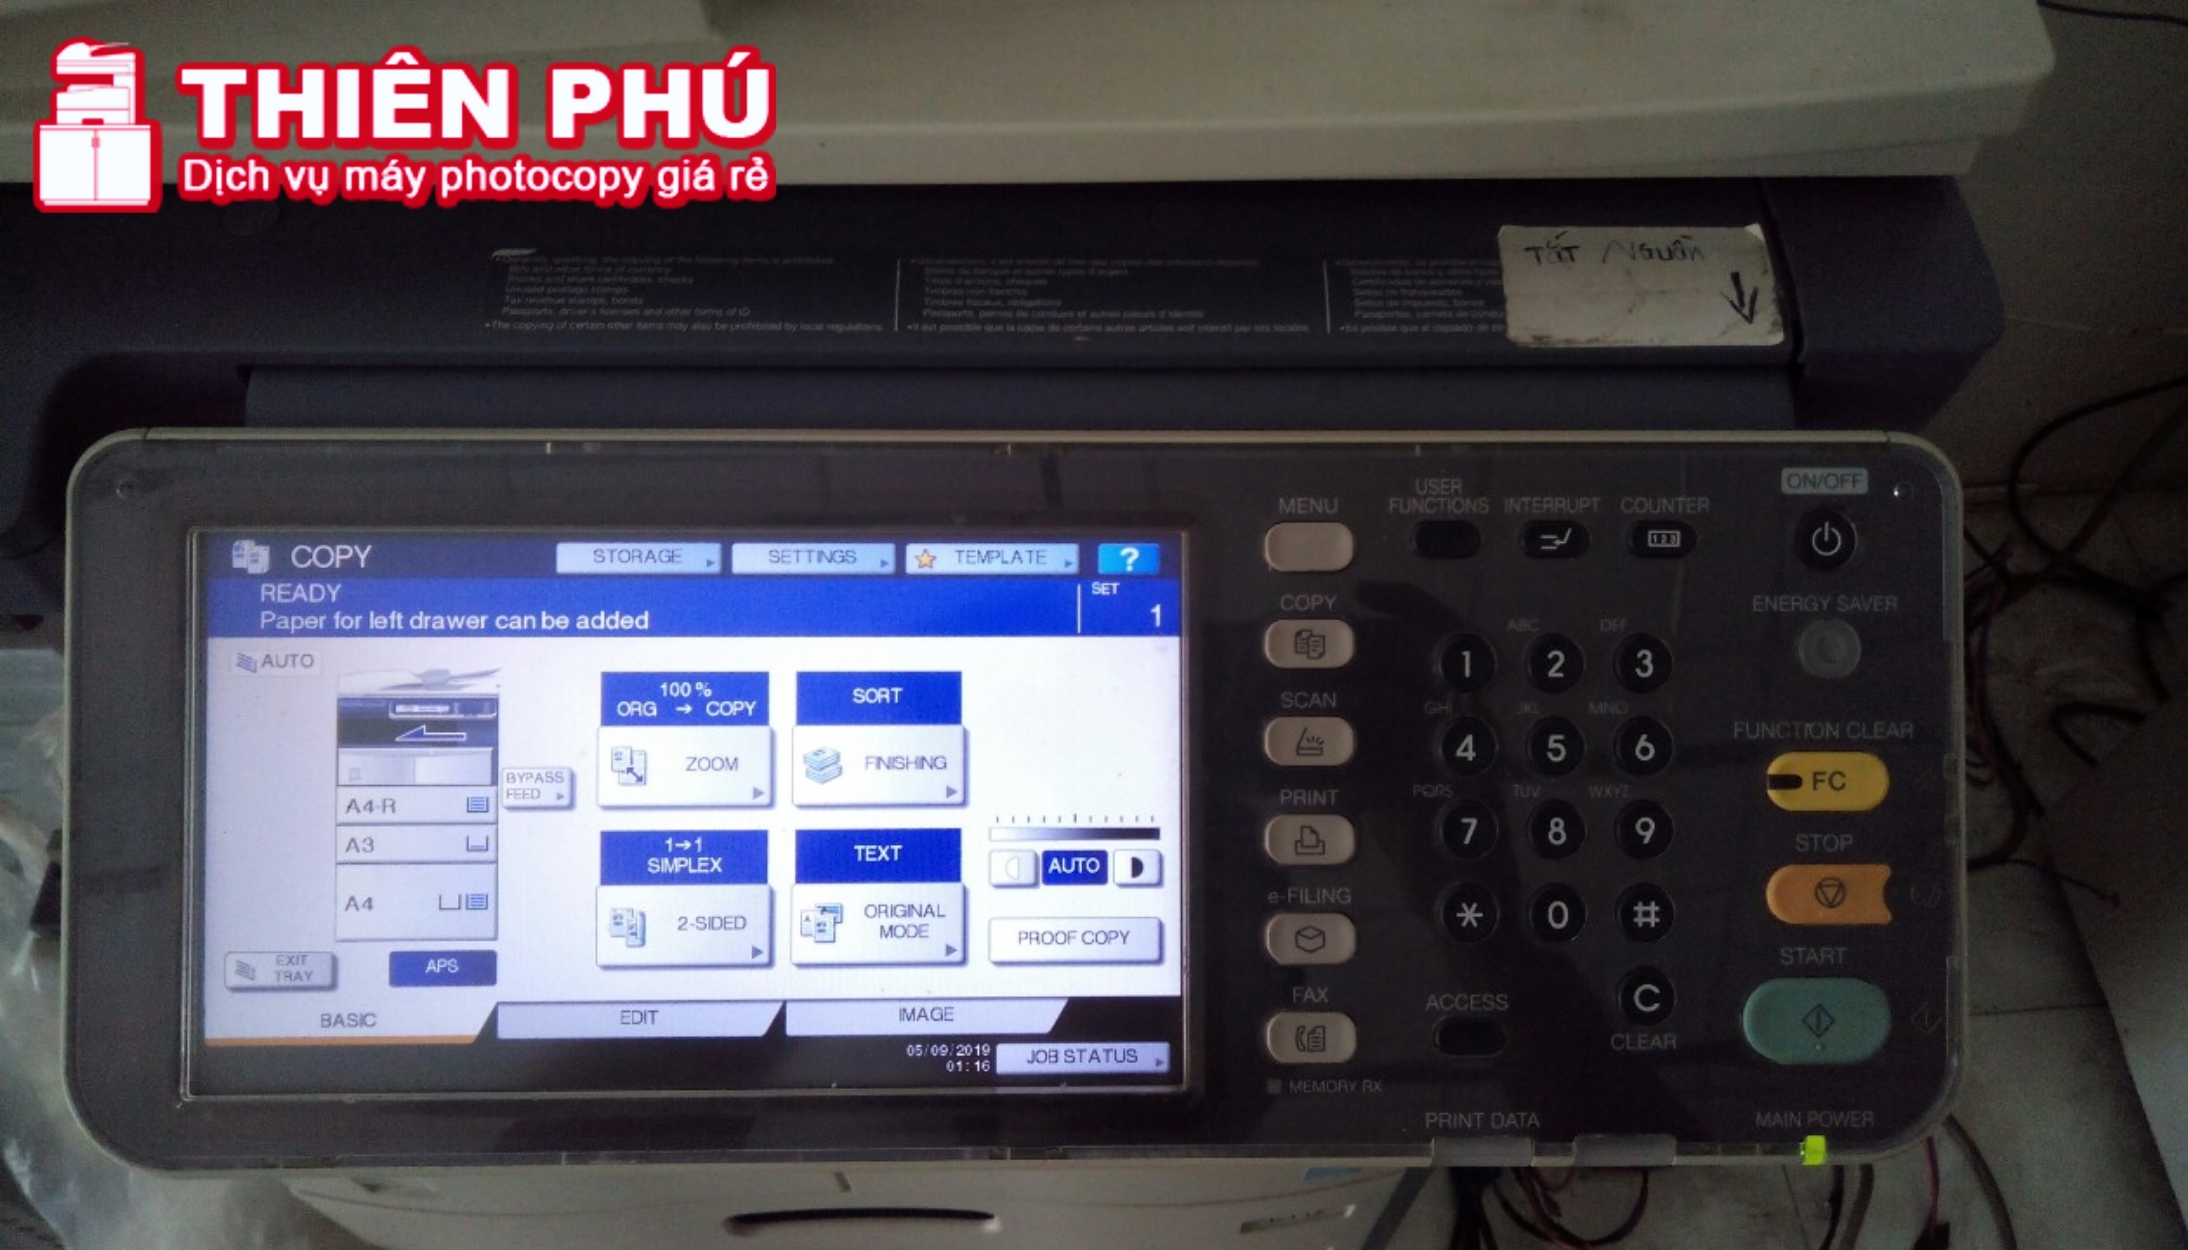 Hướng dẫn cách cài đặt IP cho máy photocopy Toshiba